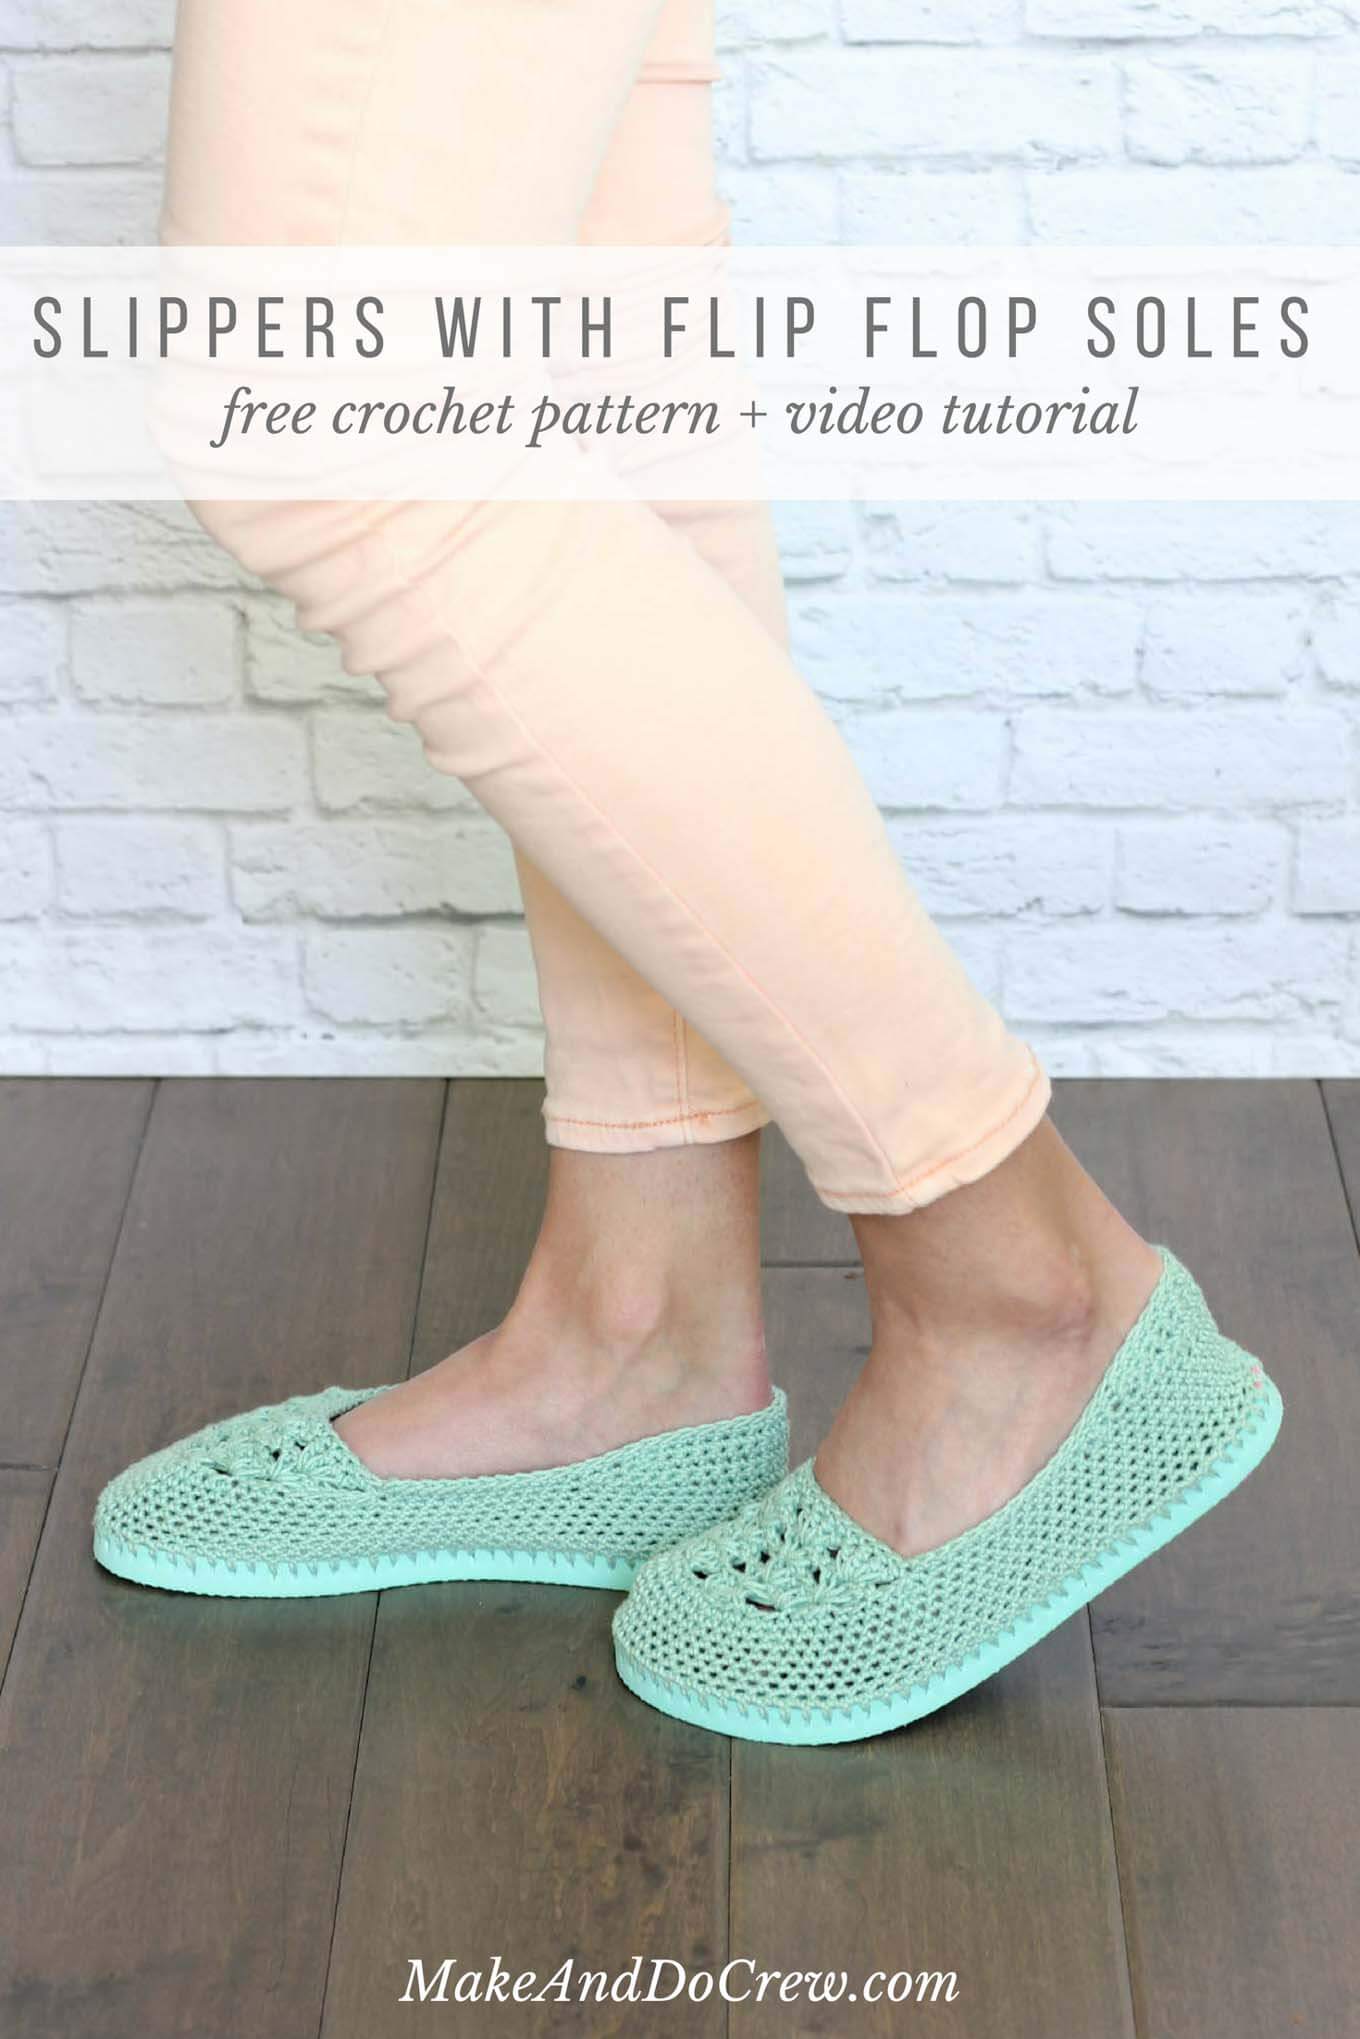 crochet projects for adults free crochet slippers pattern flip flops sole makeanddocrew